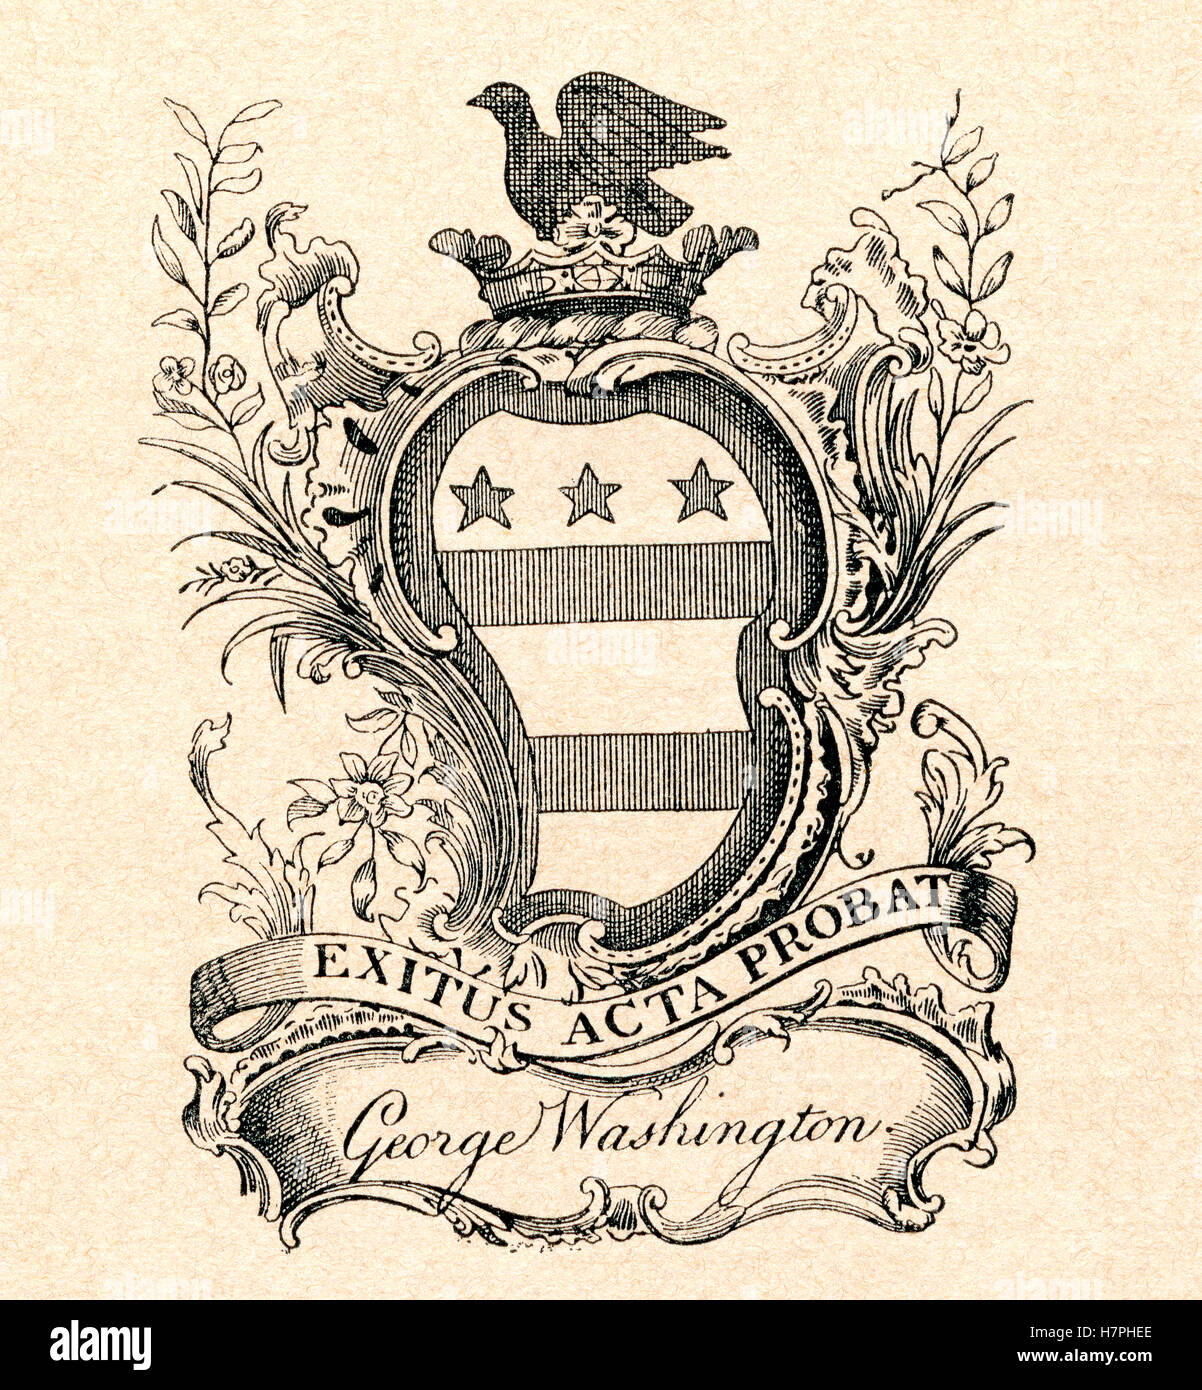 Un ex-libris aka Ex libris stamp à partir de la bibliothèque de George Washington, président des États-Unis d'Amérique. Un ex libris stamp indique la propriété. Banque D'Images